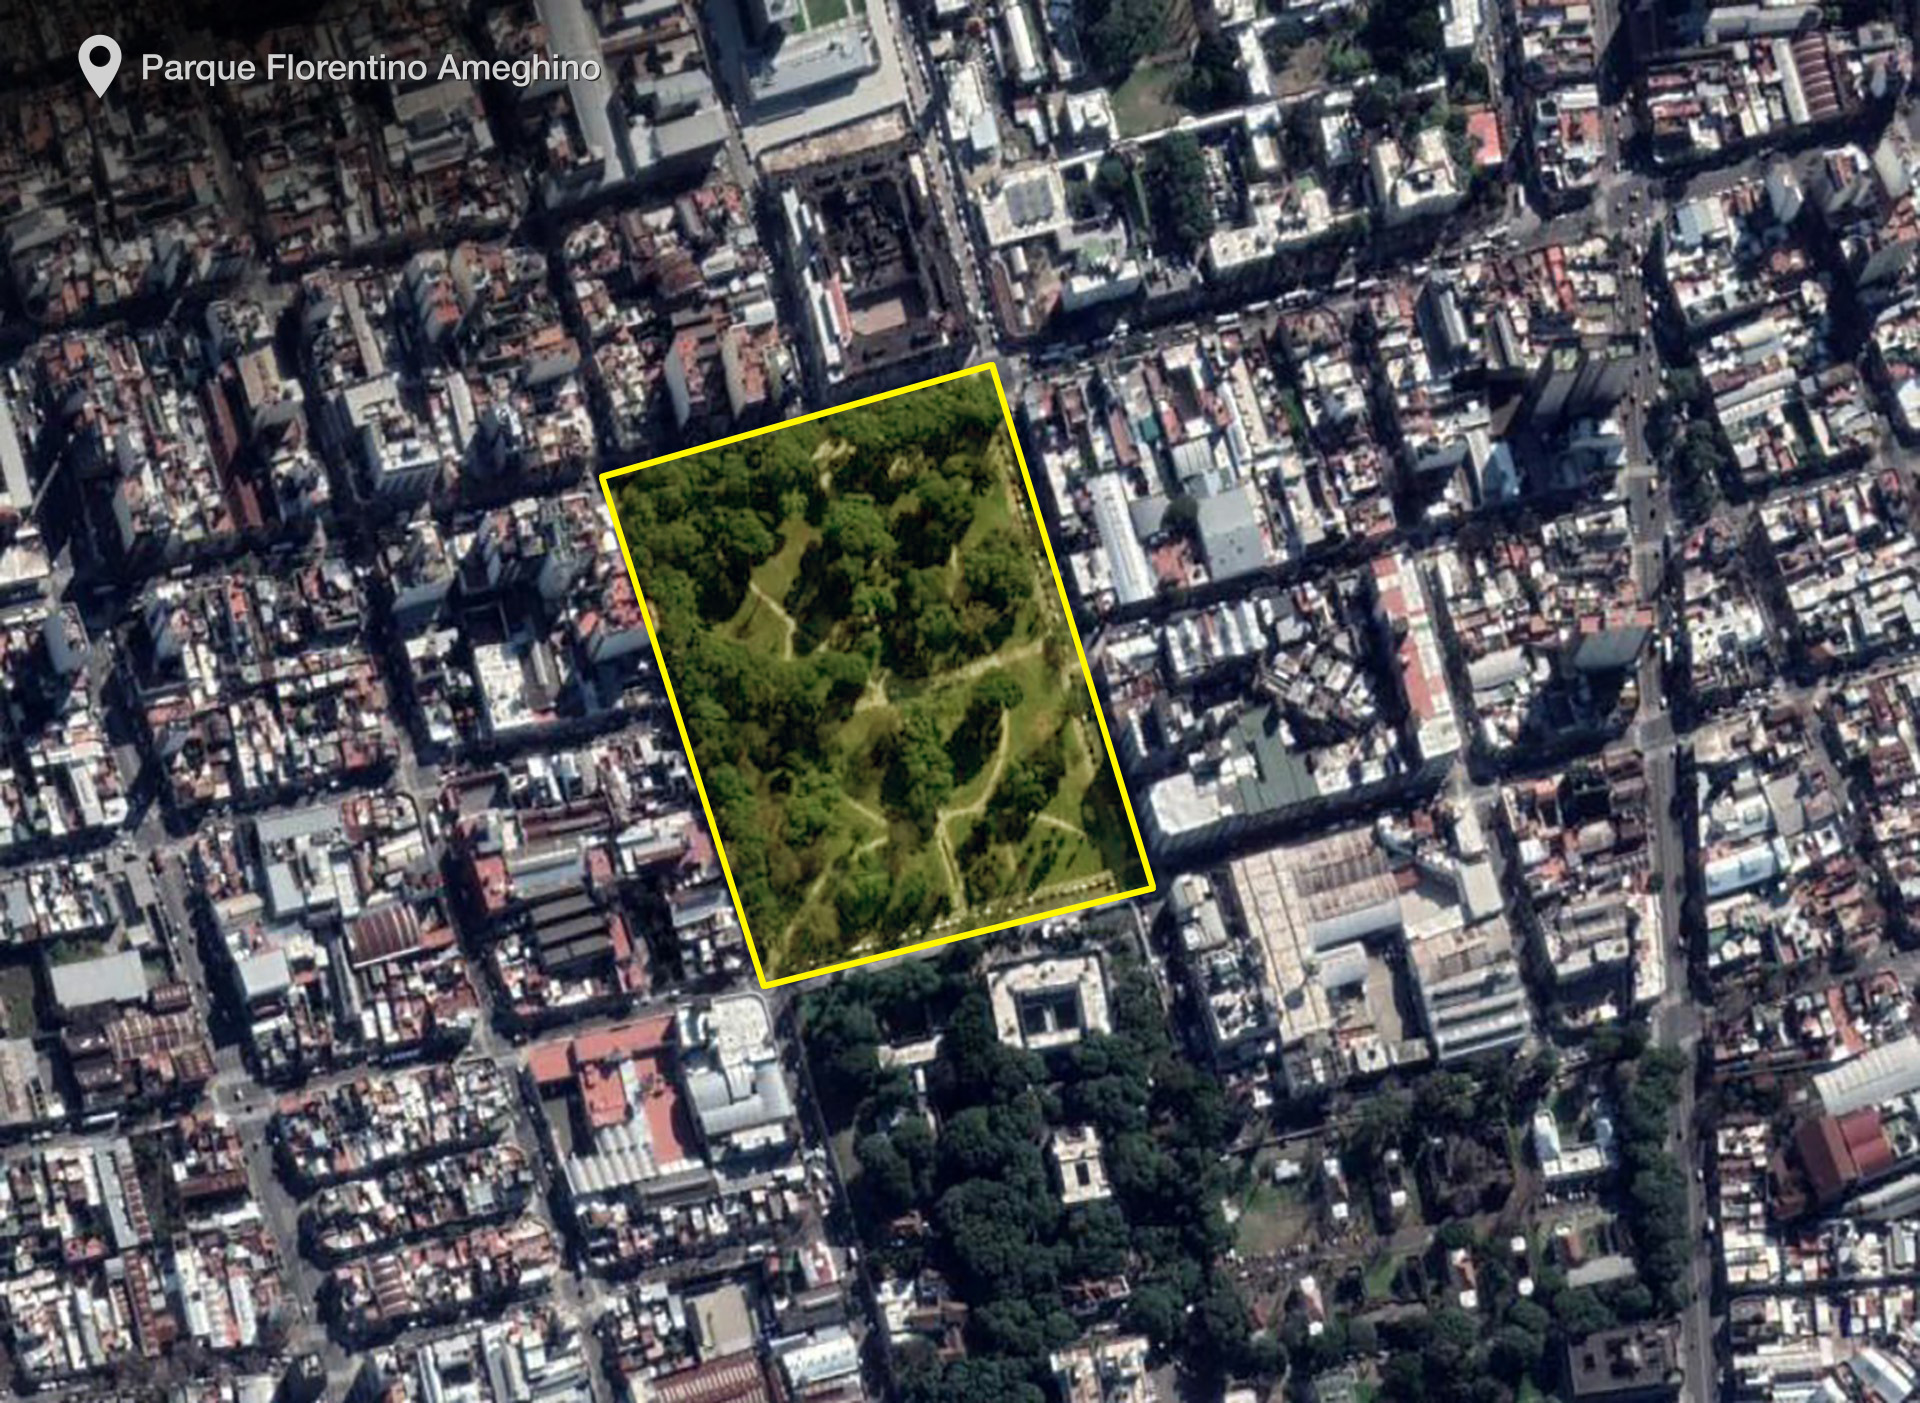 Bajo el Parque Florentino Ameghino, en Parque Patricios, está el Cementerio del Sud, que colapsó durante la epidemia de fiebre amarilla.